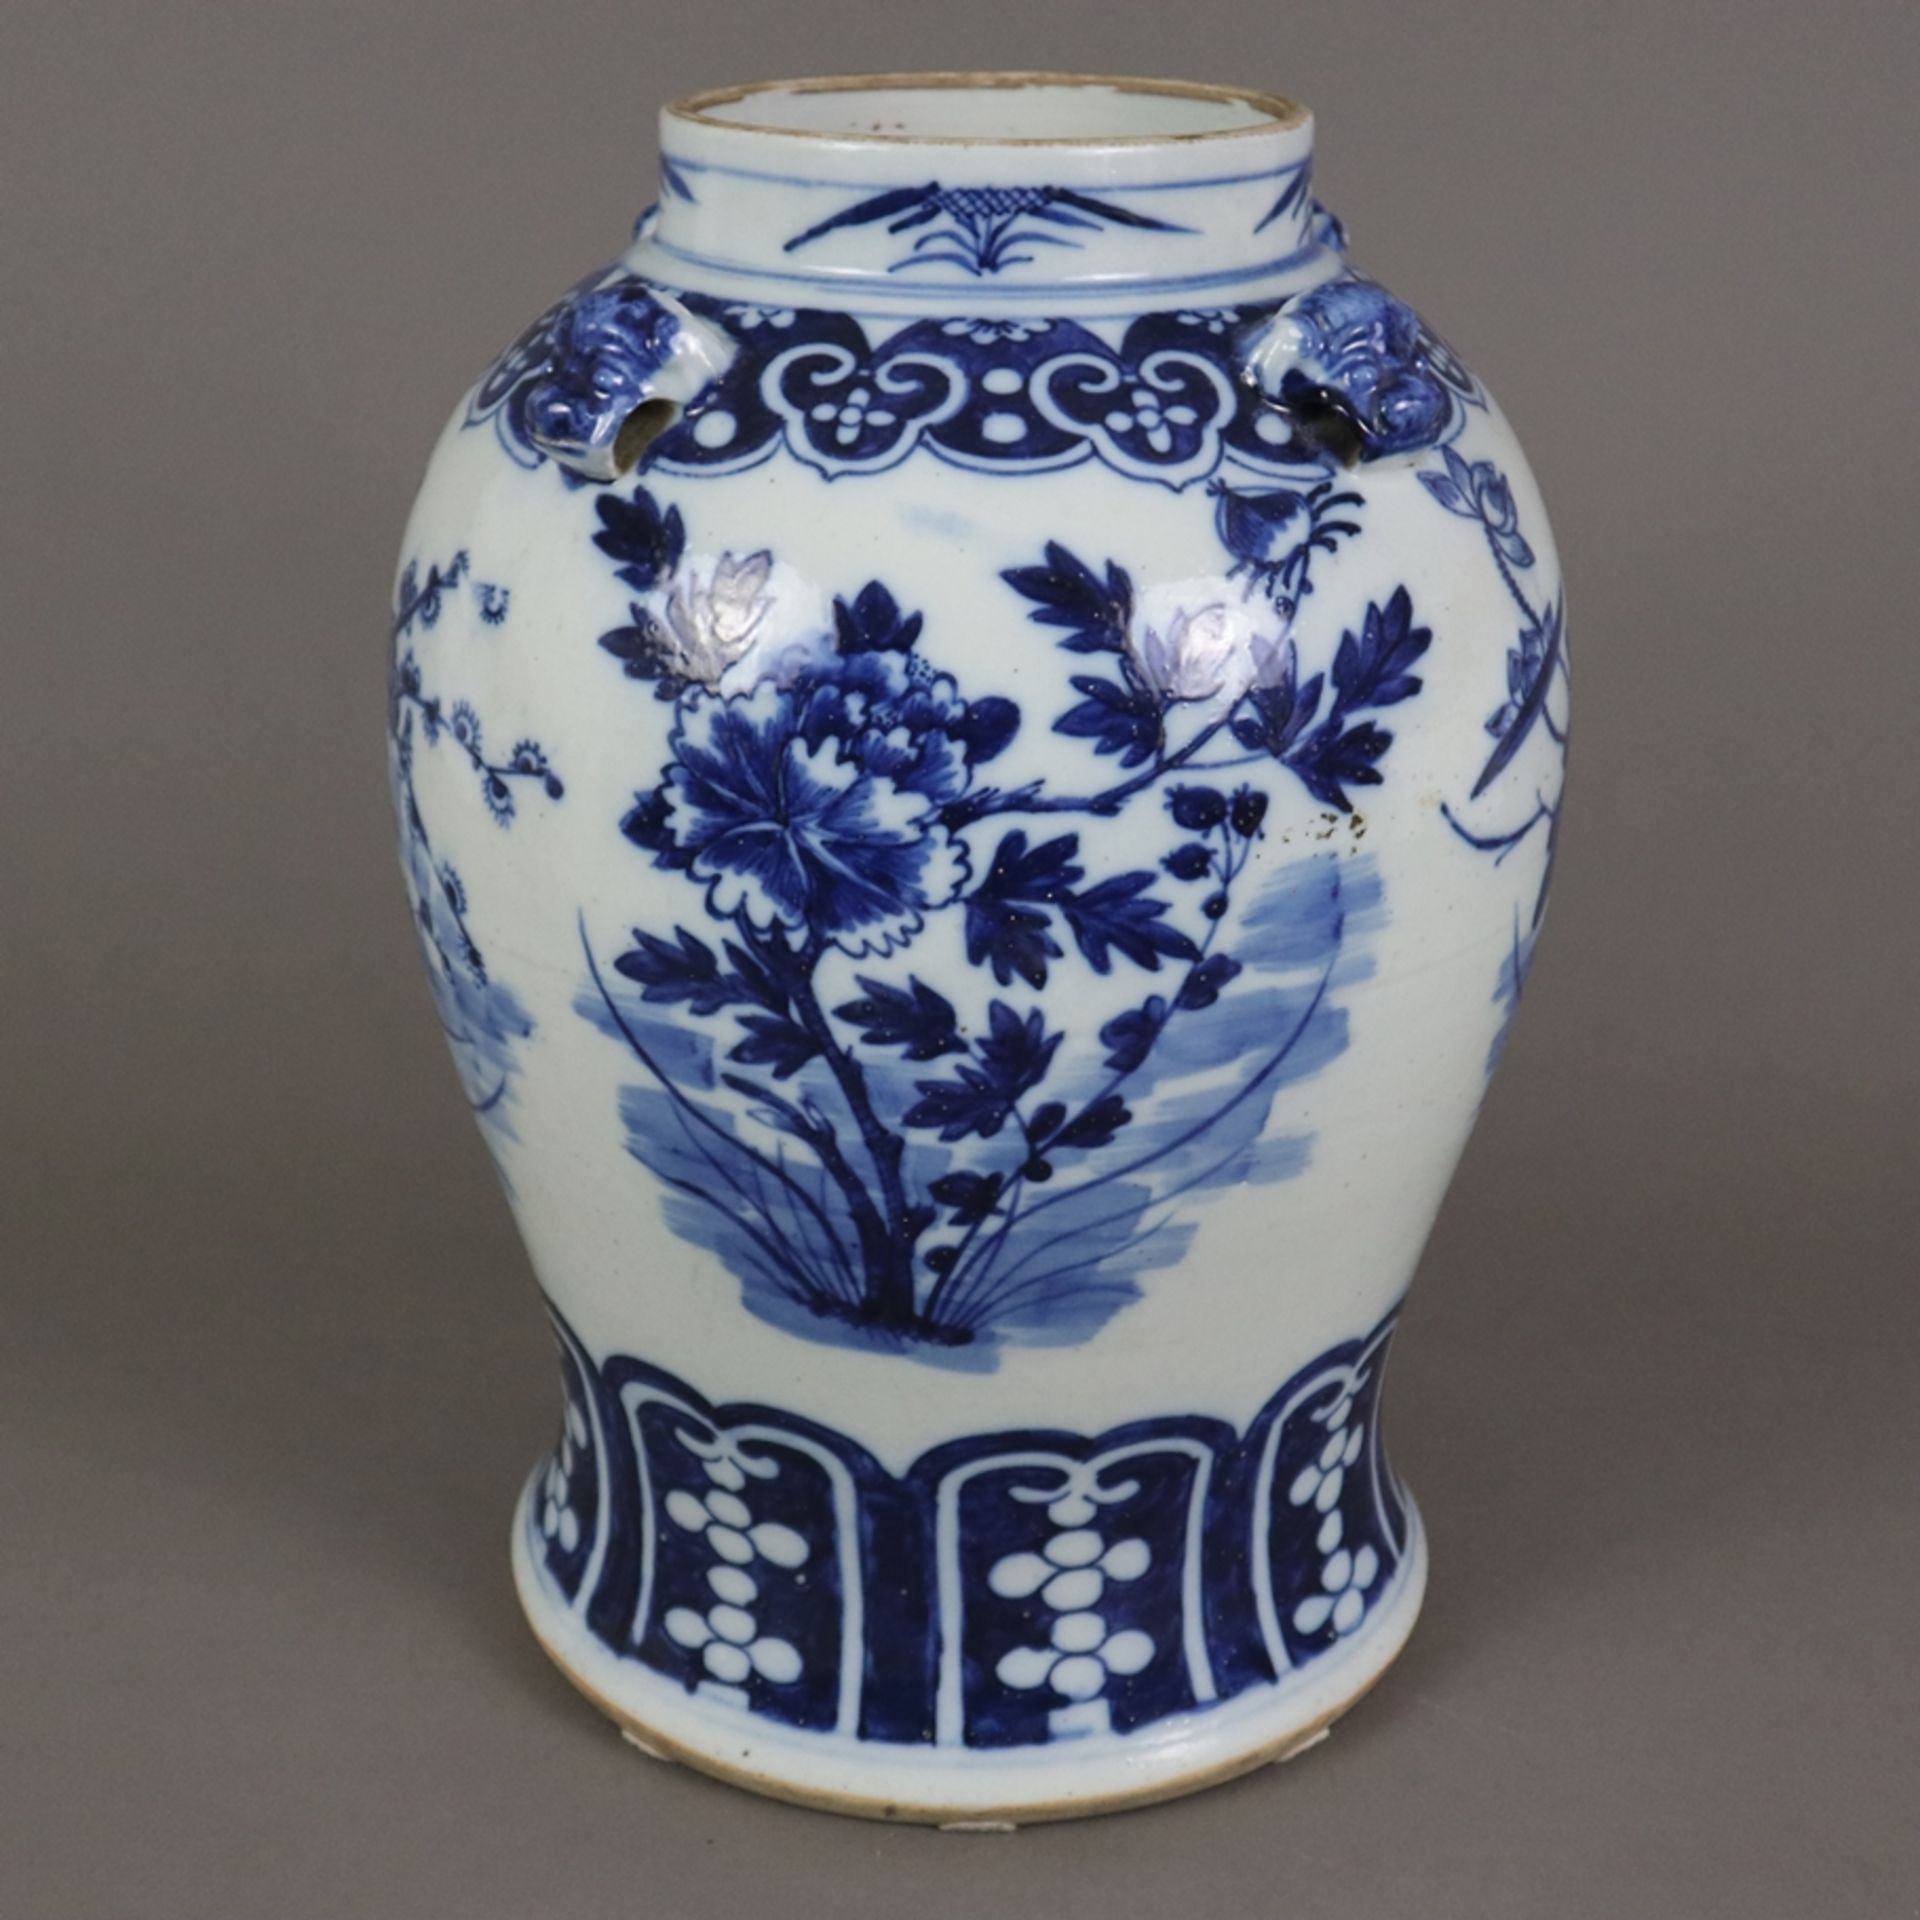 Blau-weiße Balustervase - China, späte Qing-Dynastie, Porzellan, stark gebauchte Wandung mit ausges